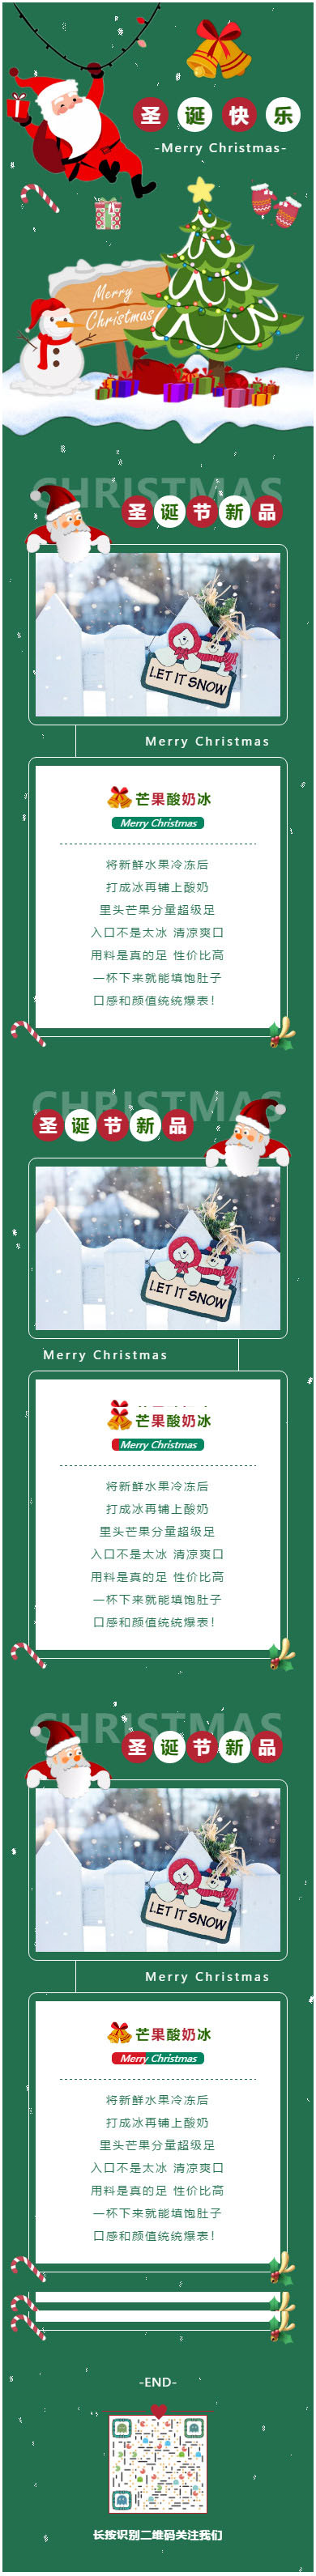 圣诞节平安夜圣诞老人礼物红绿色微信公众号推文模板推送图文素材